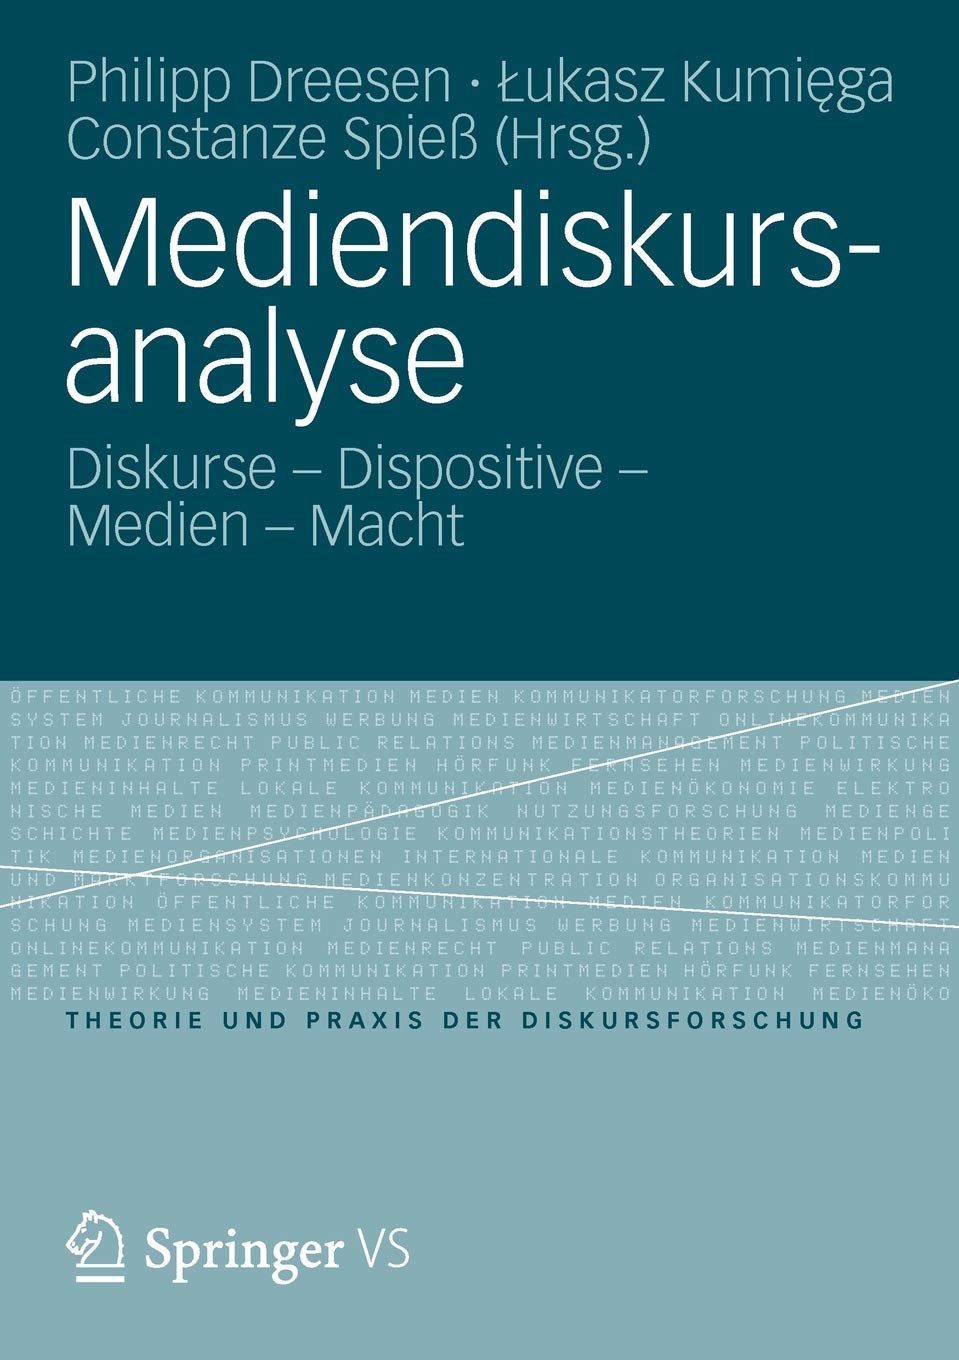 Cover:: Valentin Dander, Patrick Bettinger: Mediendiskursanalyse als multiperspektivisches Unterfangen